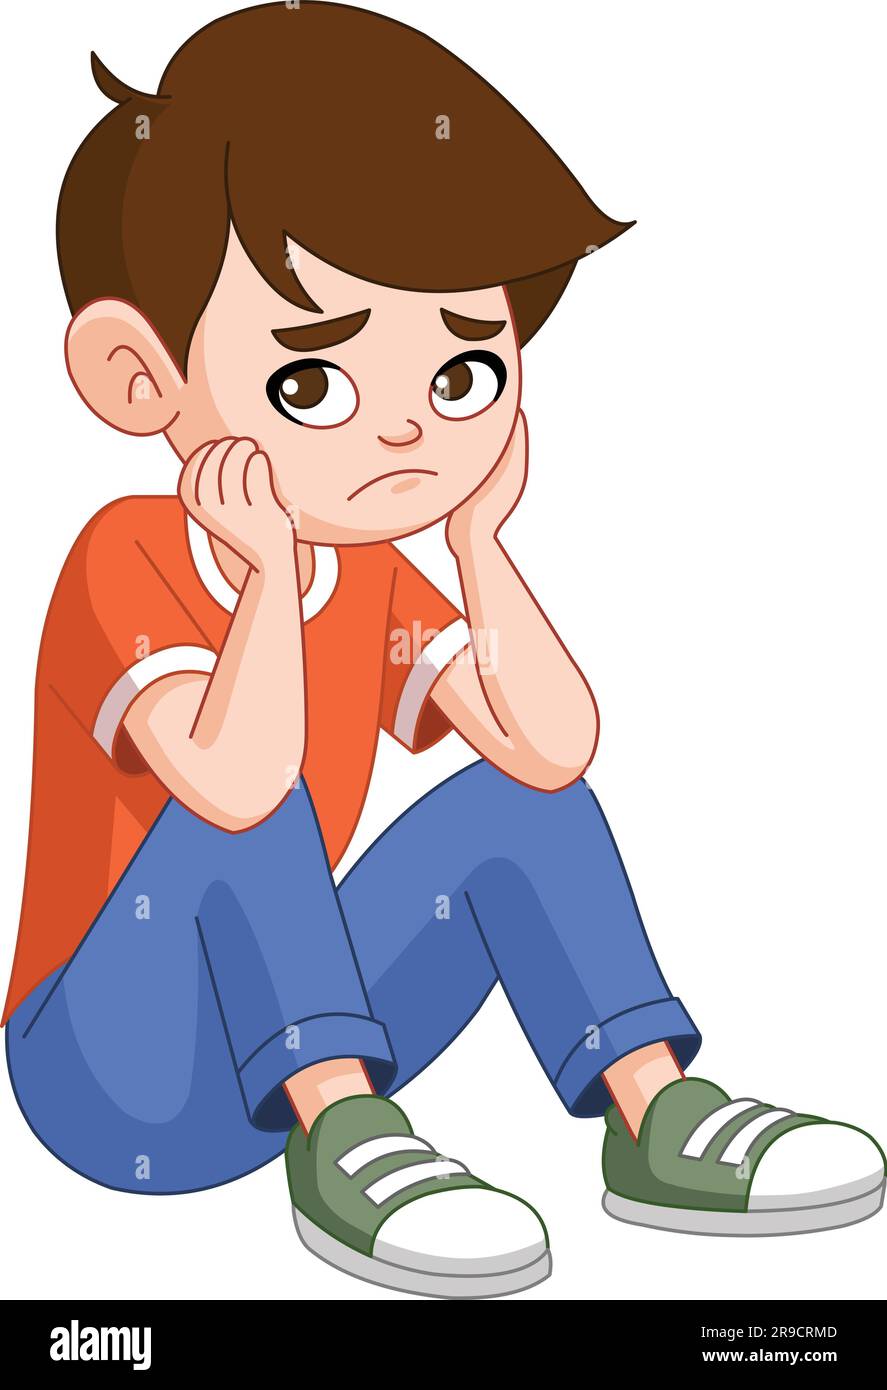 Un ragazzo con un'espressione triste o pensiva siede sul pavimento Illustrazione Vettoriale